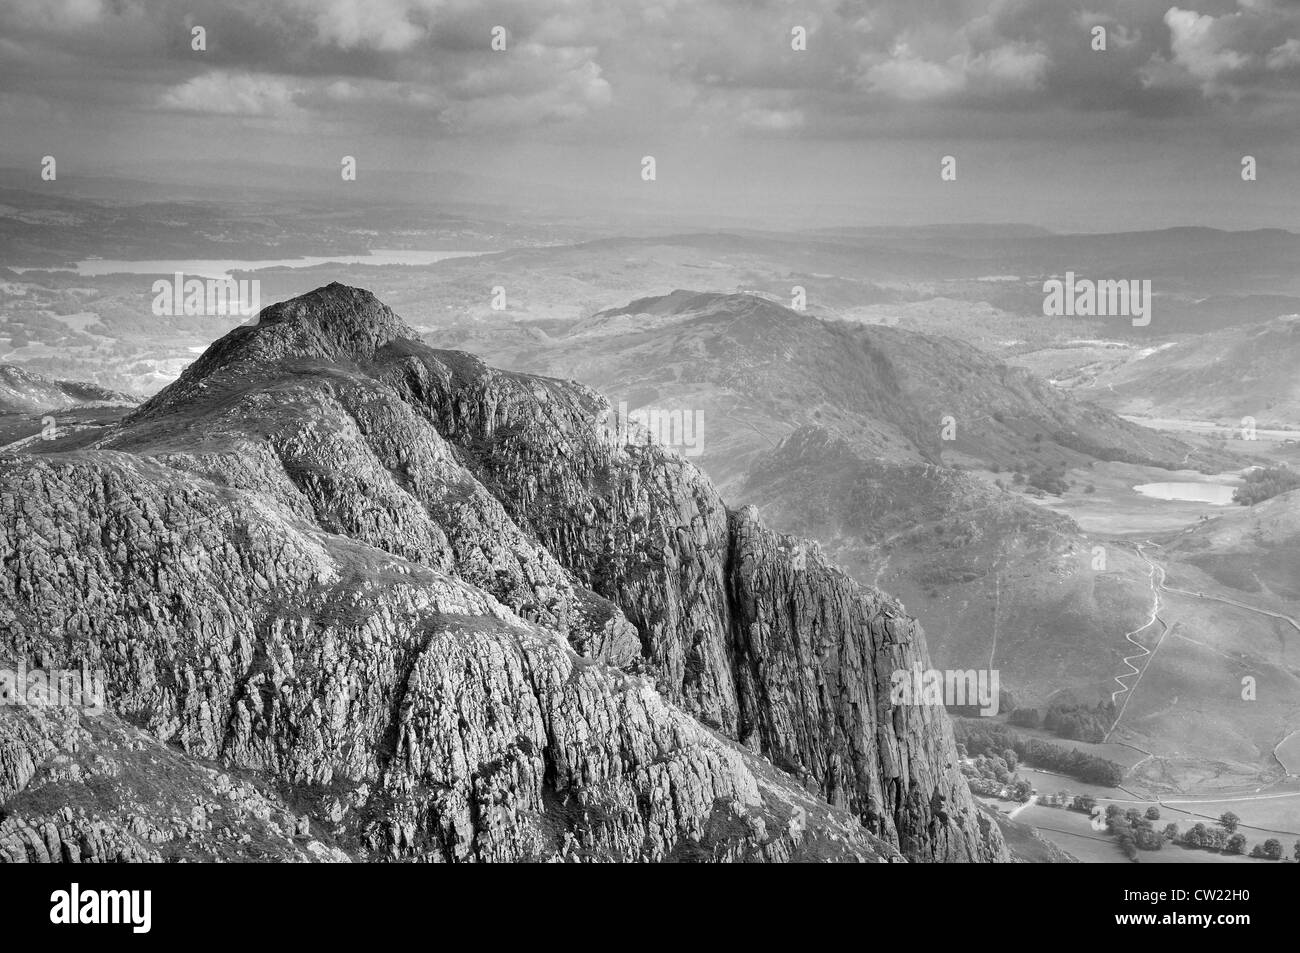 Image en noir et blanc de Loft Crag, partie de la chaîne des Langdale Pikes dans le Lake District. Prises de brochets de Stickle Banque D'Images